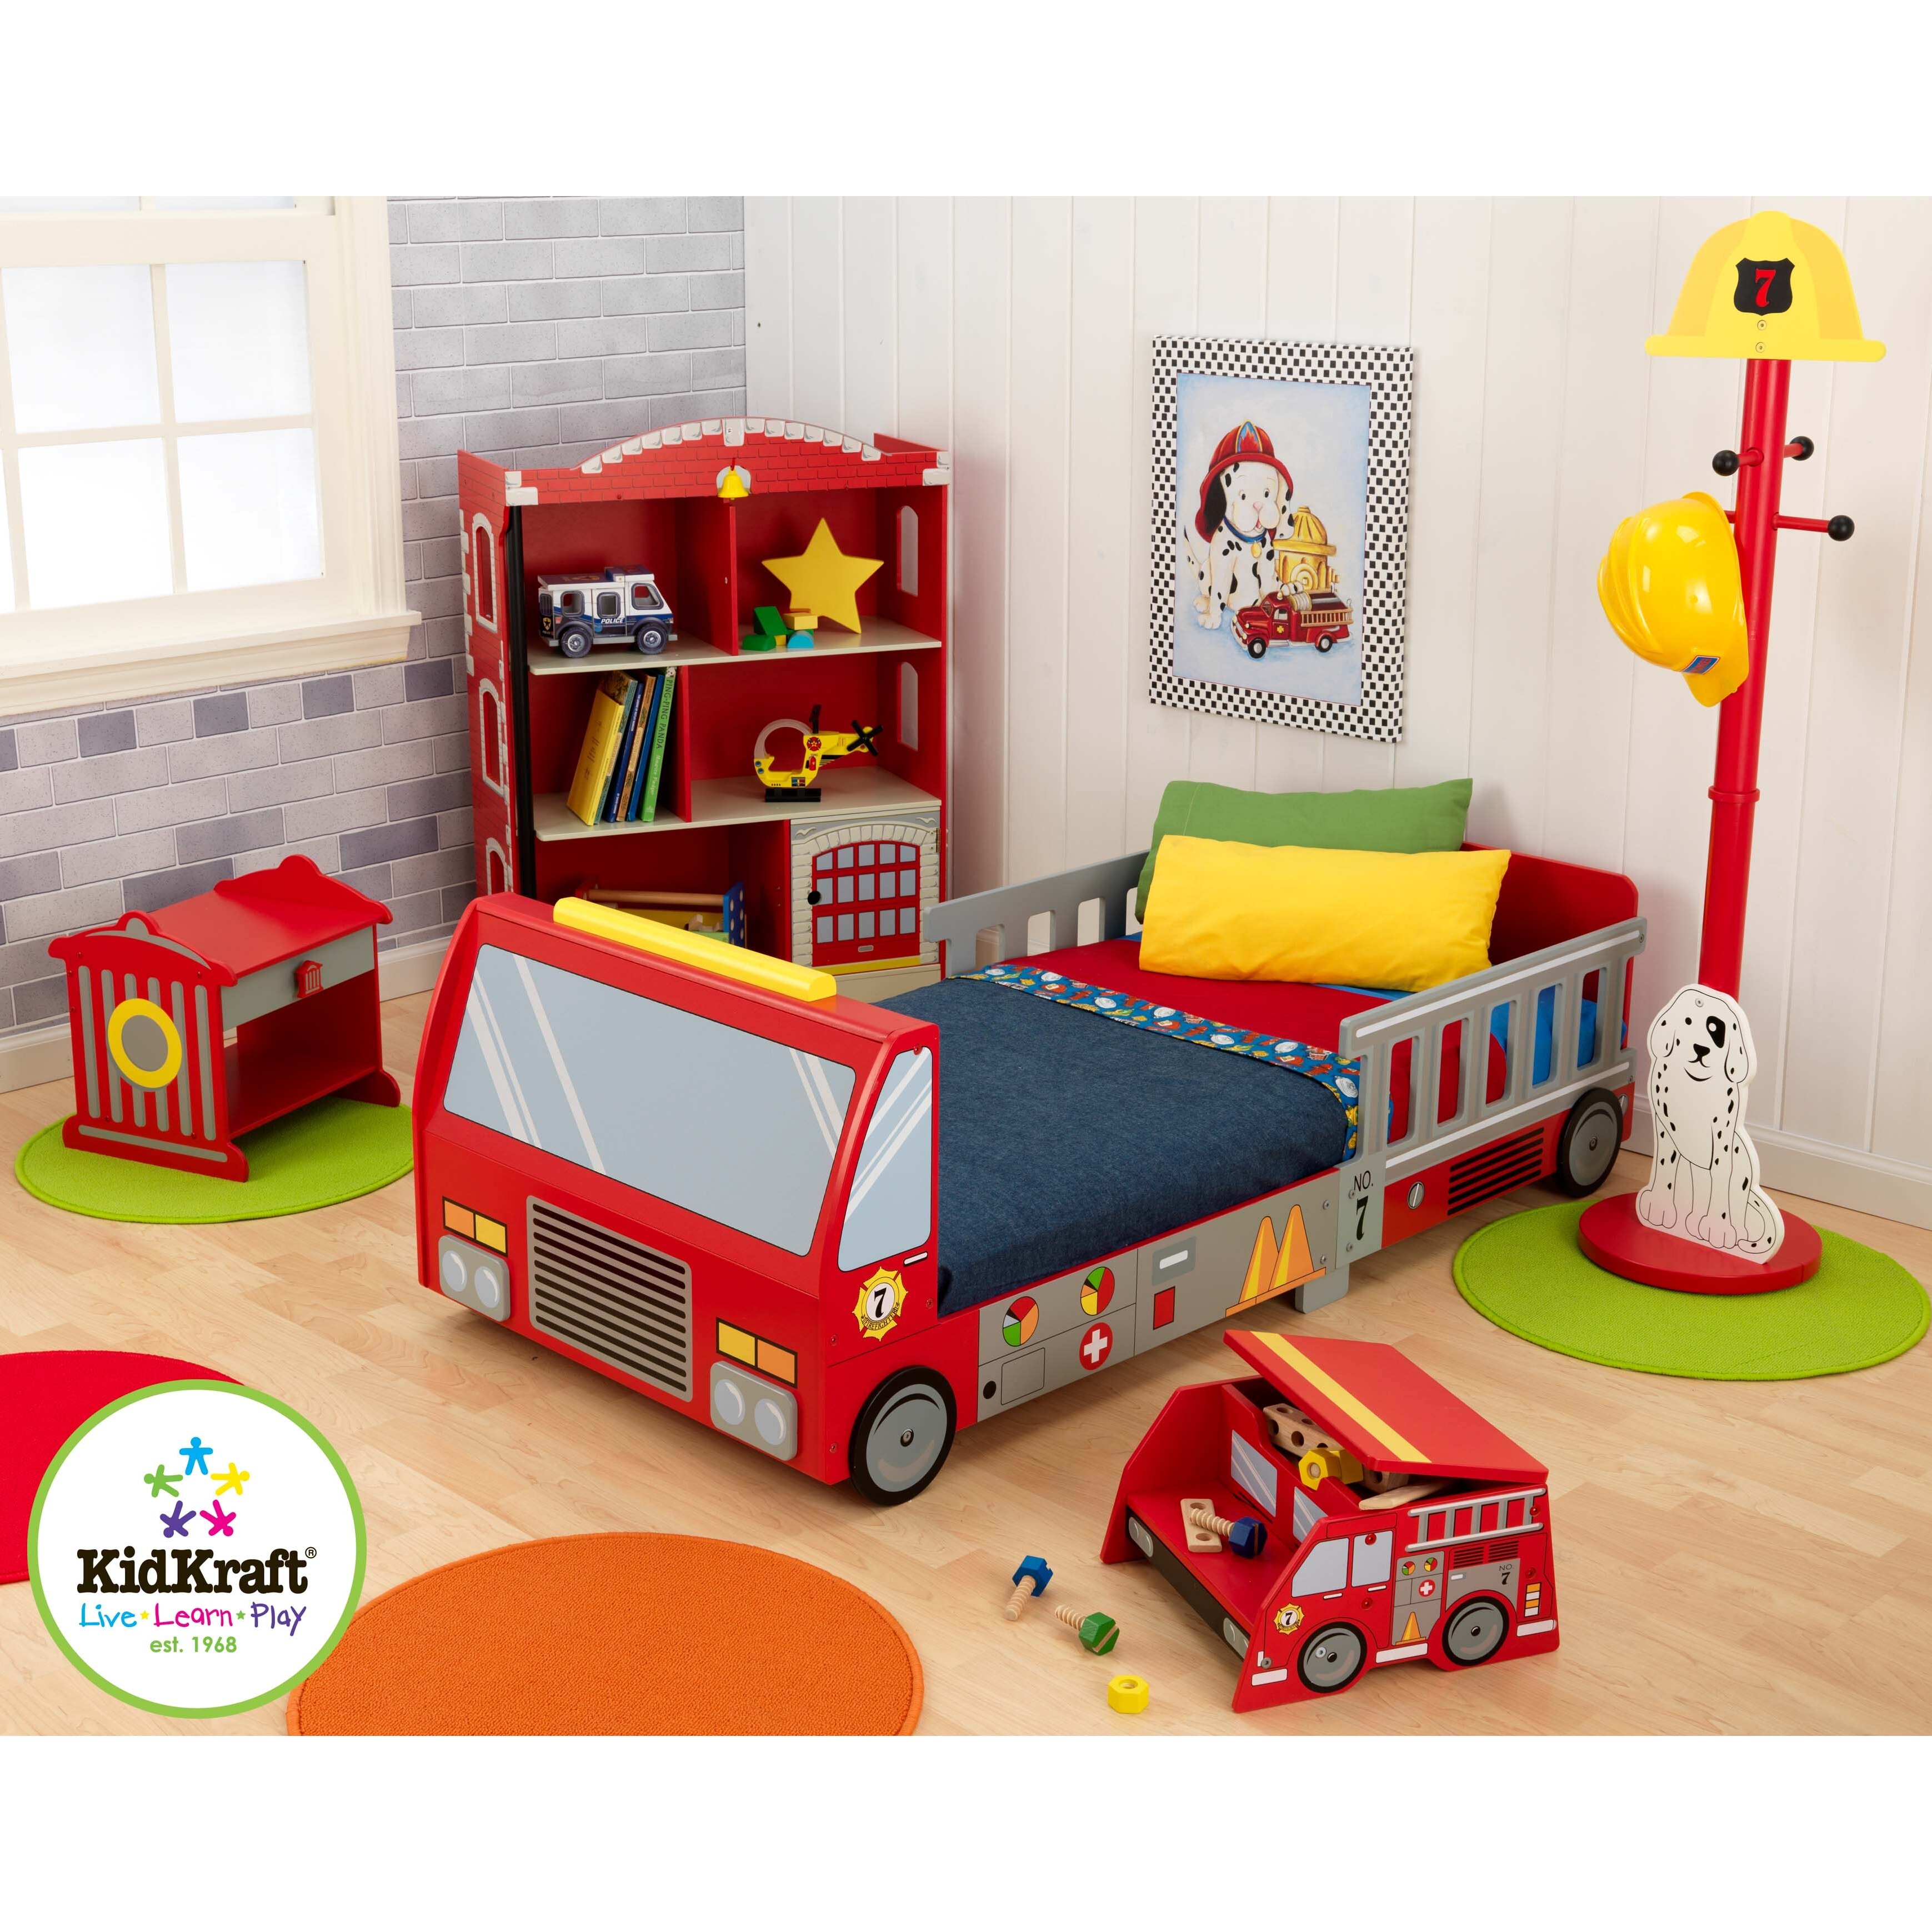 KidKraft Firefighter Toddler Car Customizable Bedroom Set u0026 Reviews  Wayfair